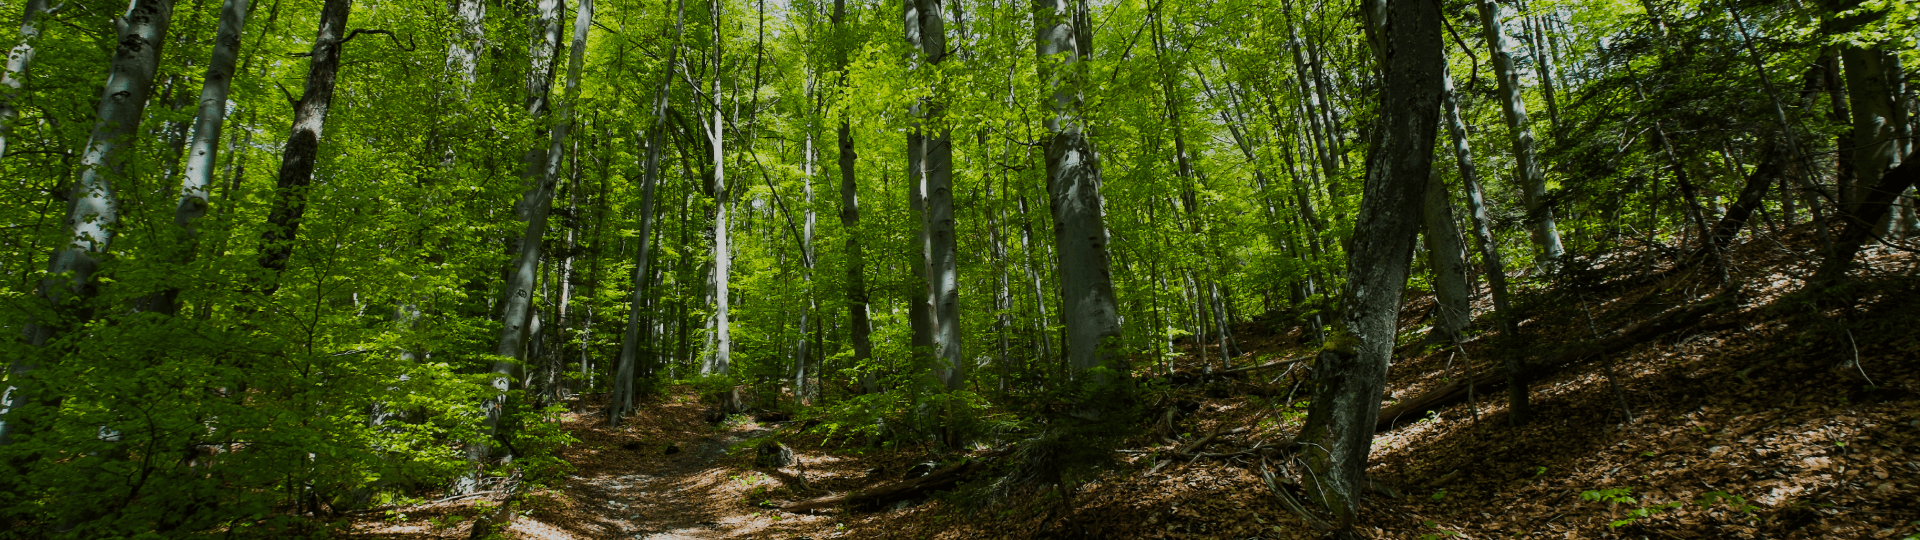 Fibre Excellence enviroFORESTERIE, une gestion forestière durable